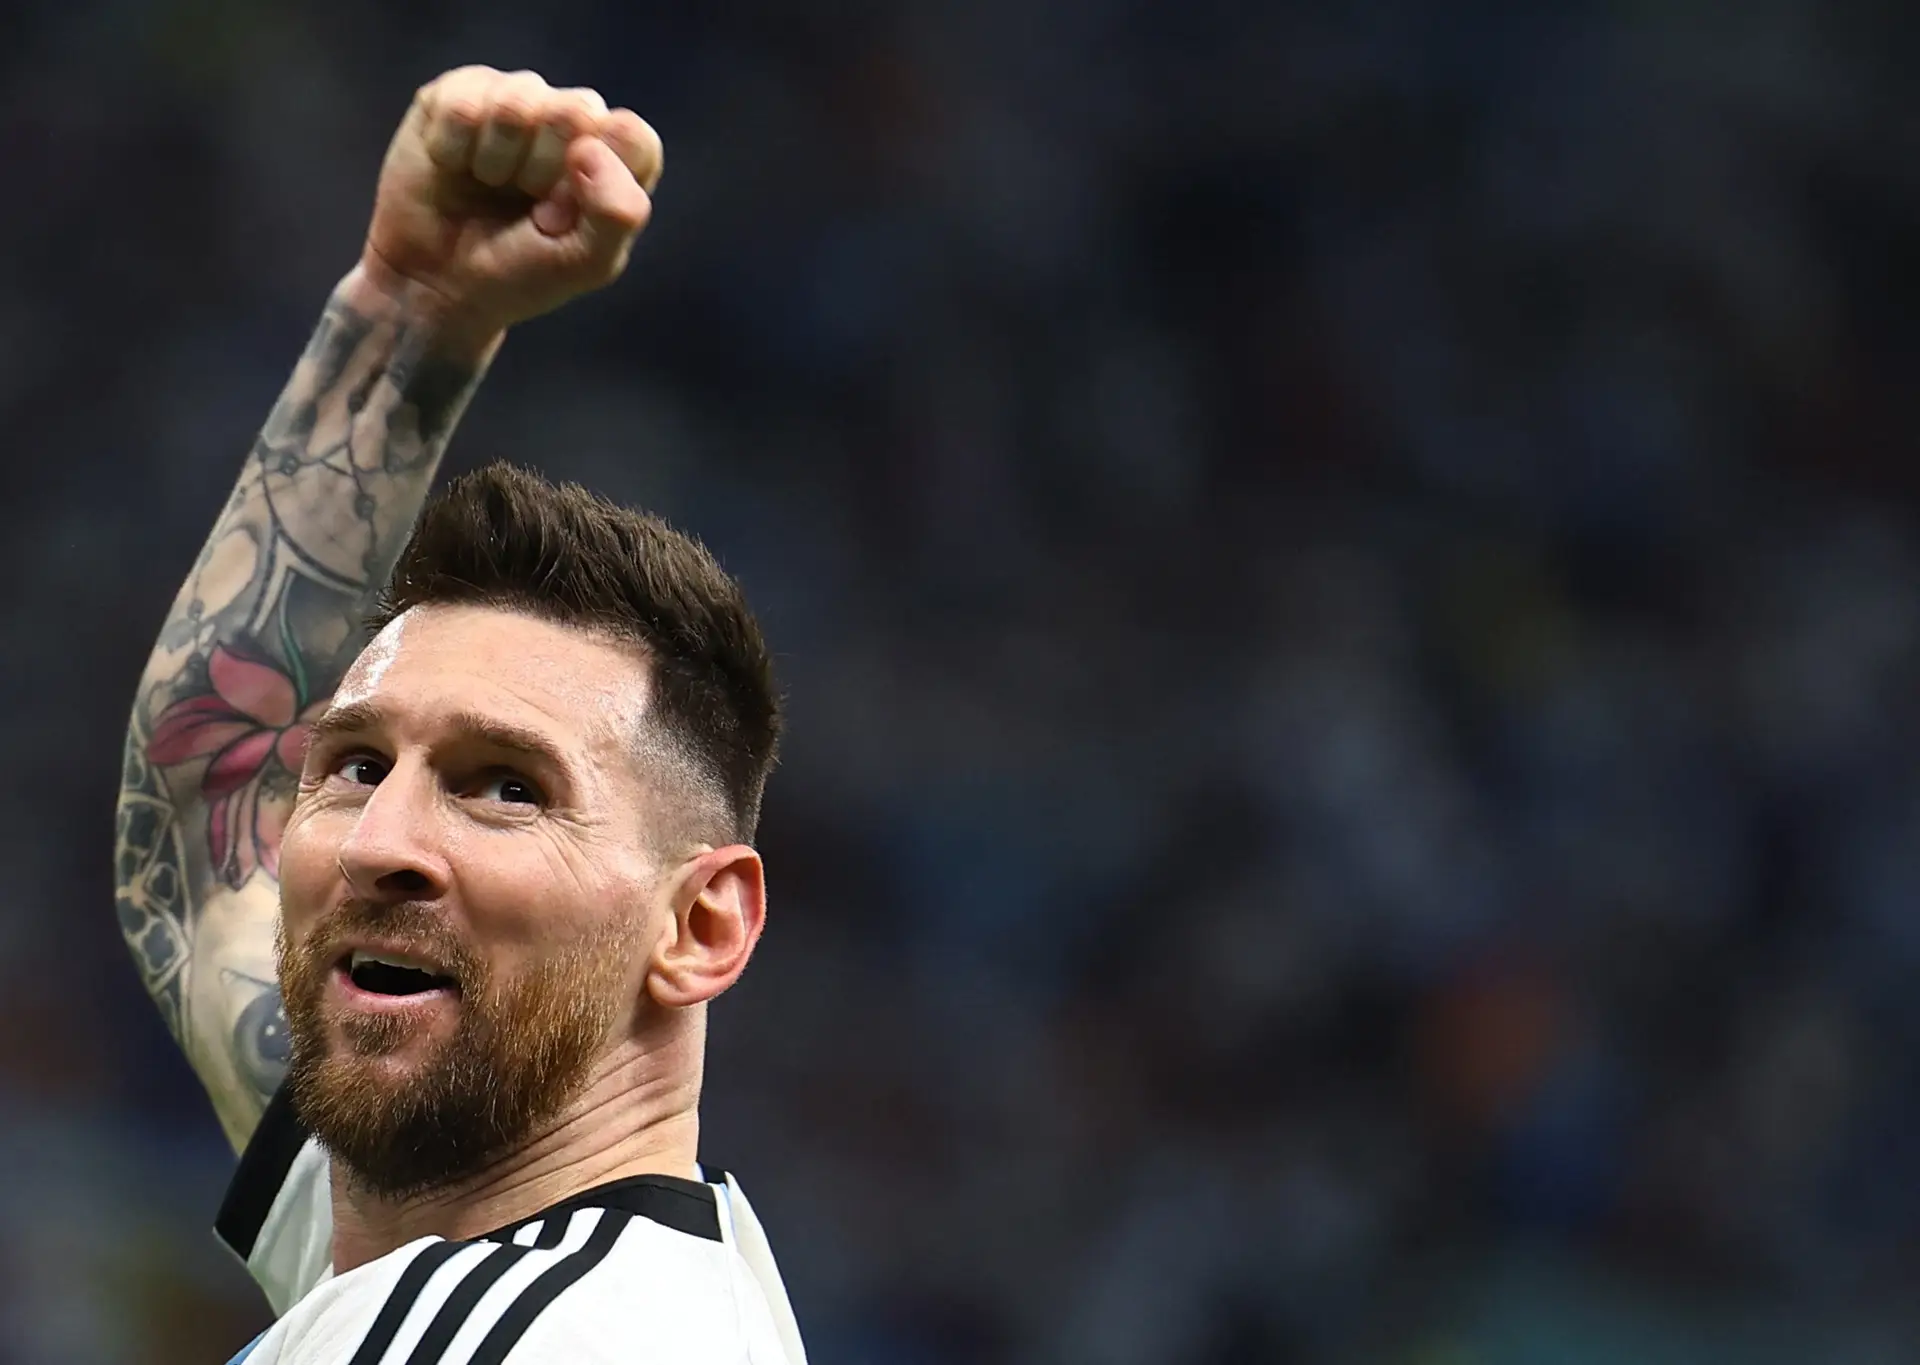 "Para onde estás a olhar, parvo?": FIFA revela novas imagens sobre polémica com Messi